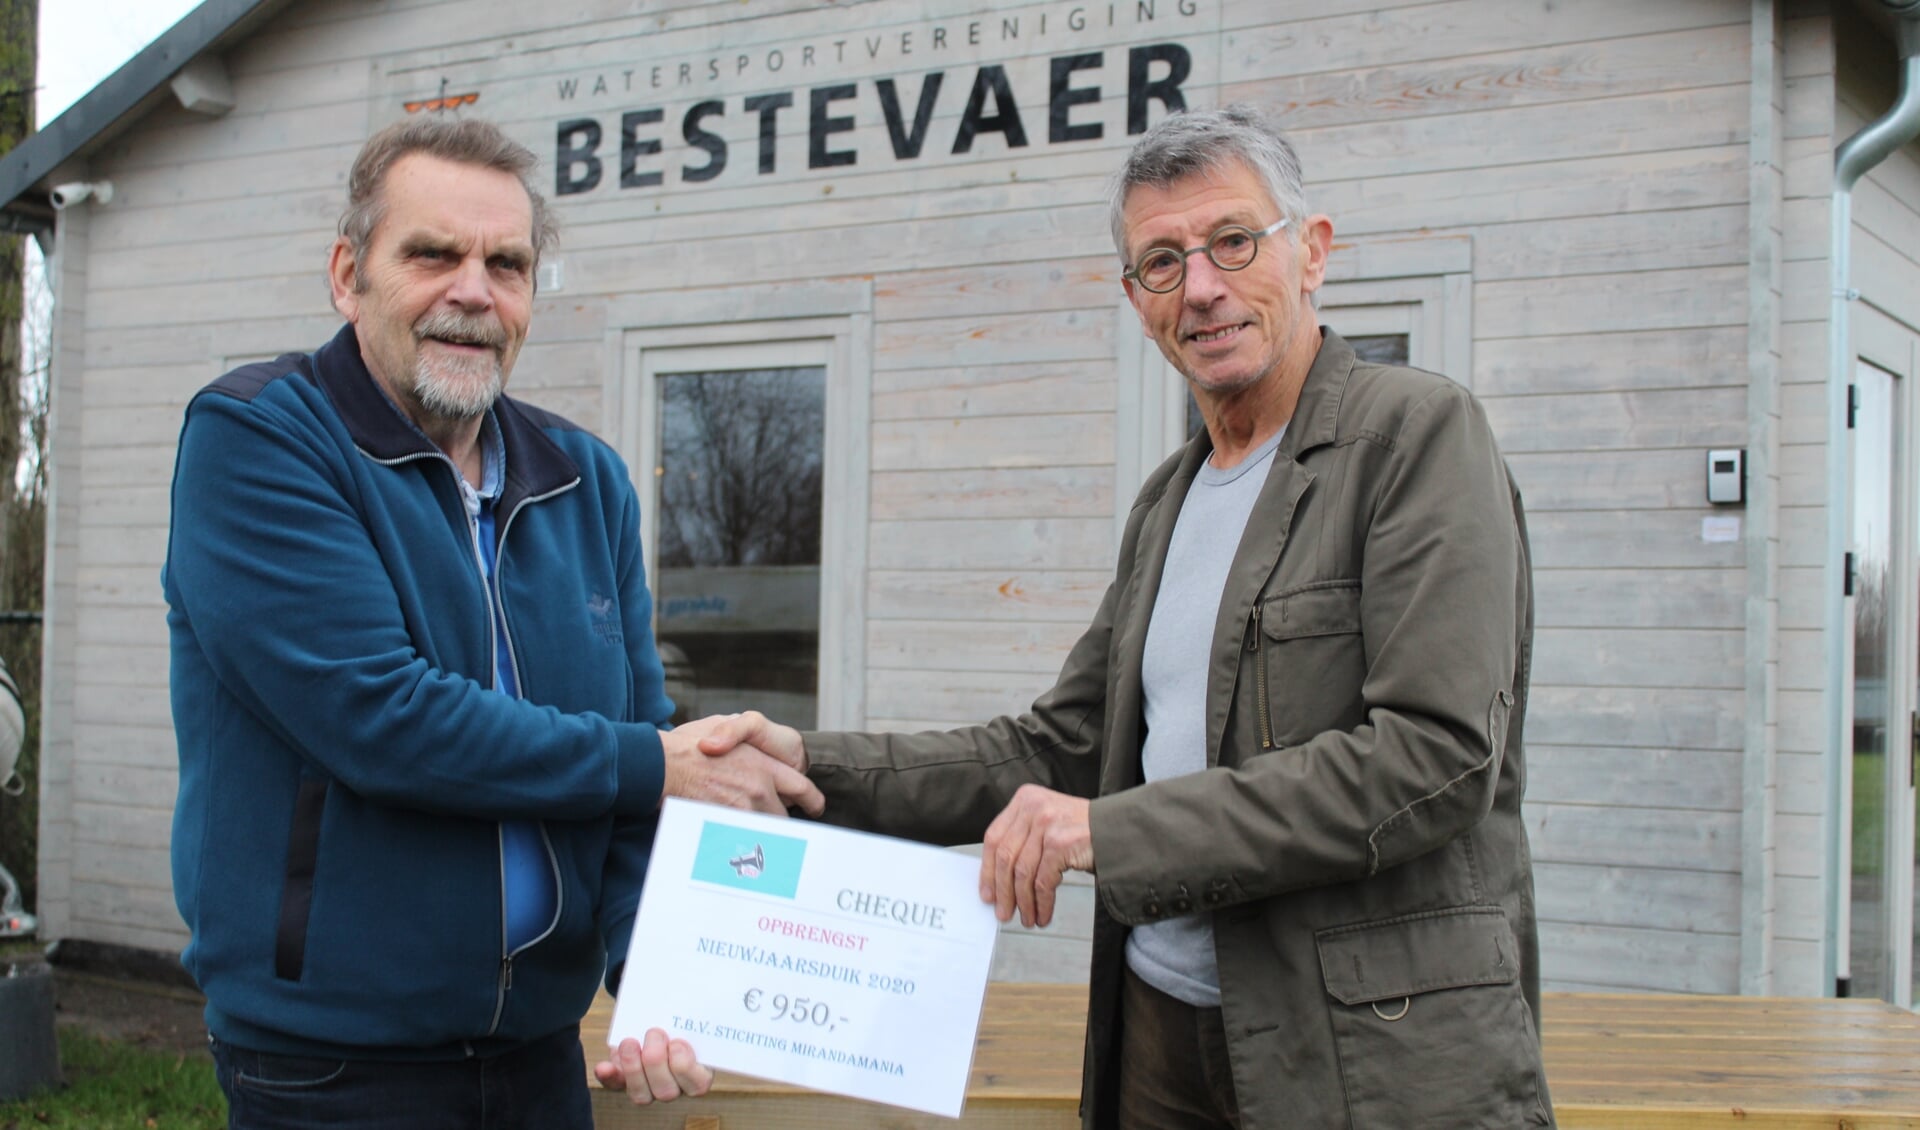 Roel Braaksma, van MirandaMania, krijgt uit handen van Siem Zeilemaker, fractievoorzitter van PWF, een cheque van 950 euro uitgereikt. 